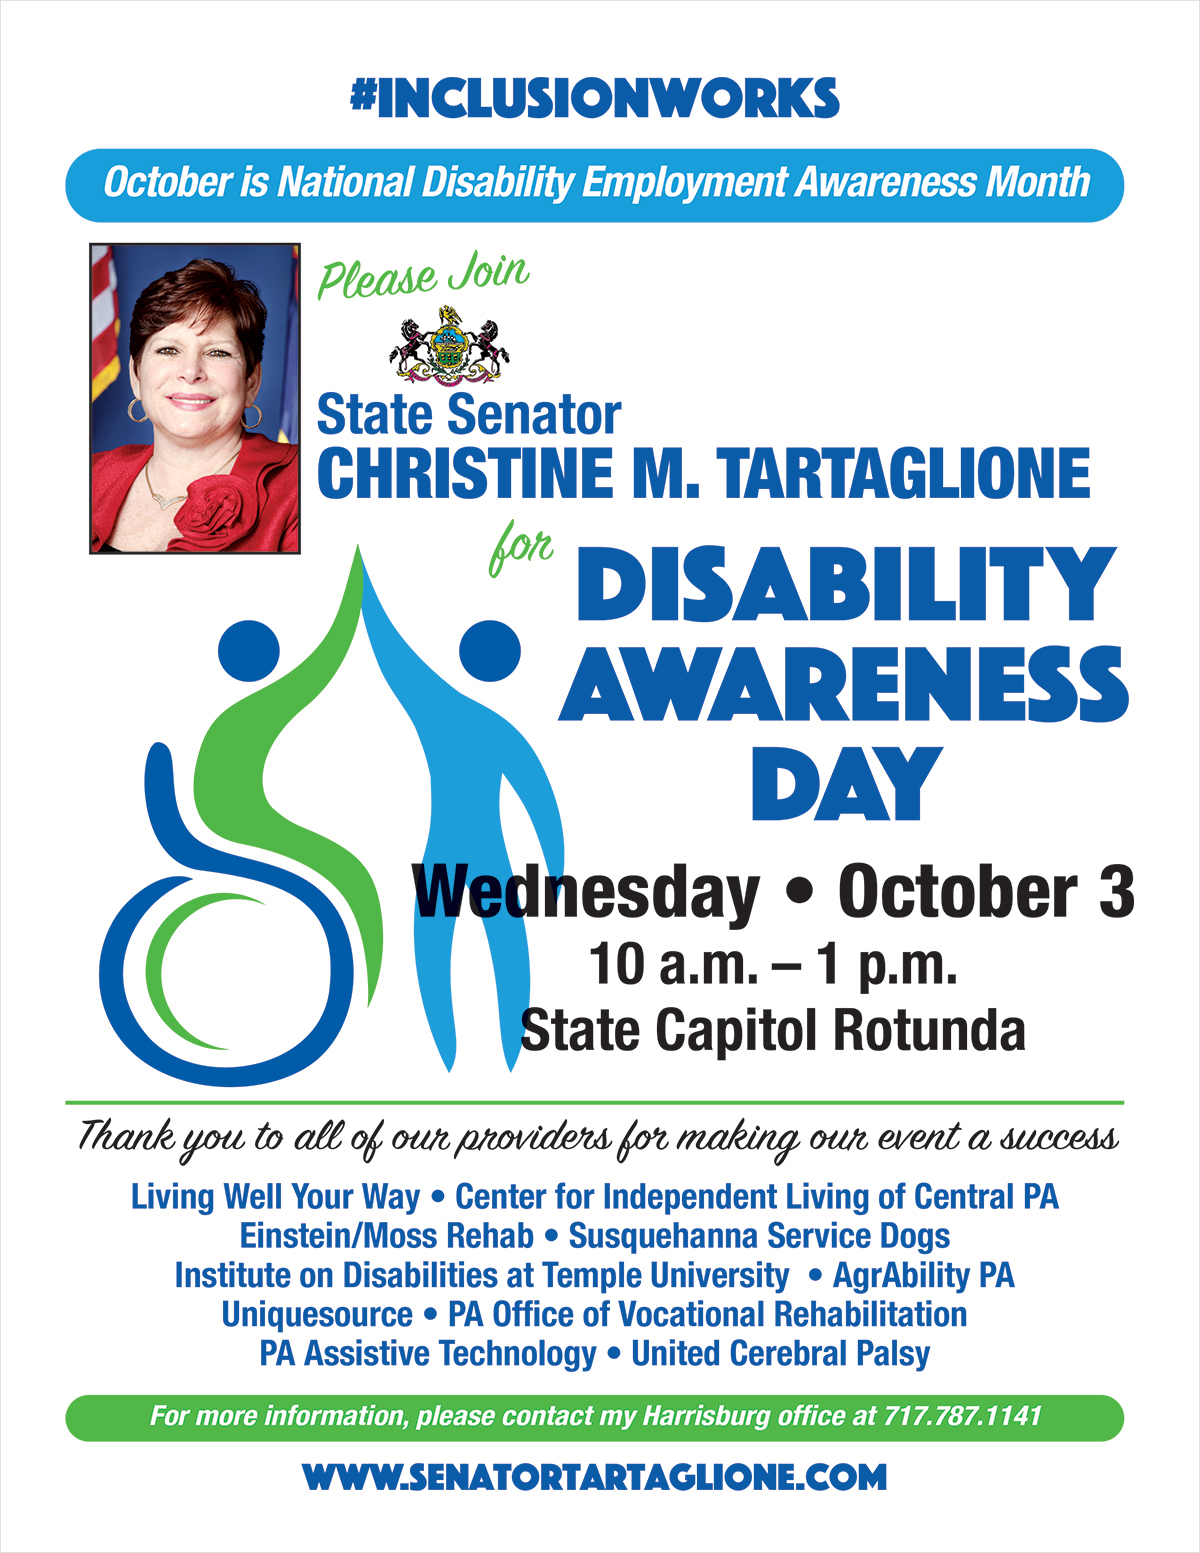 Disability Awareness Day